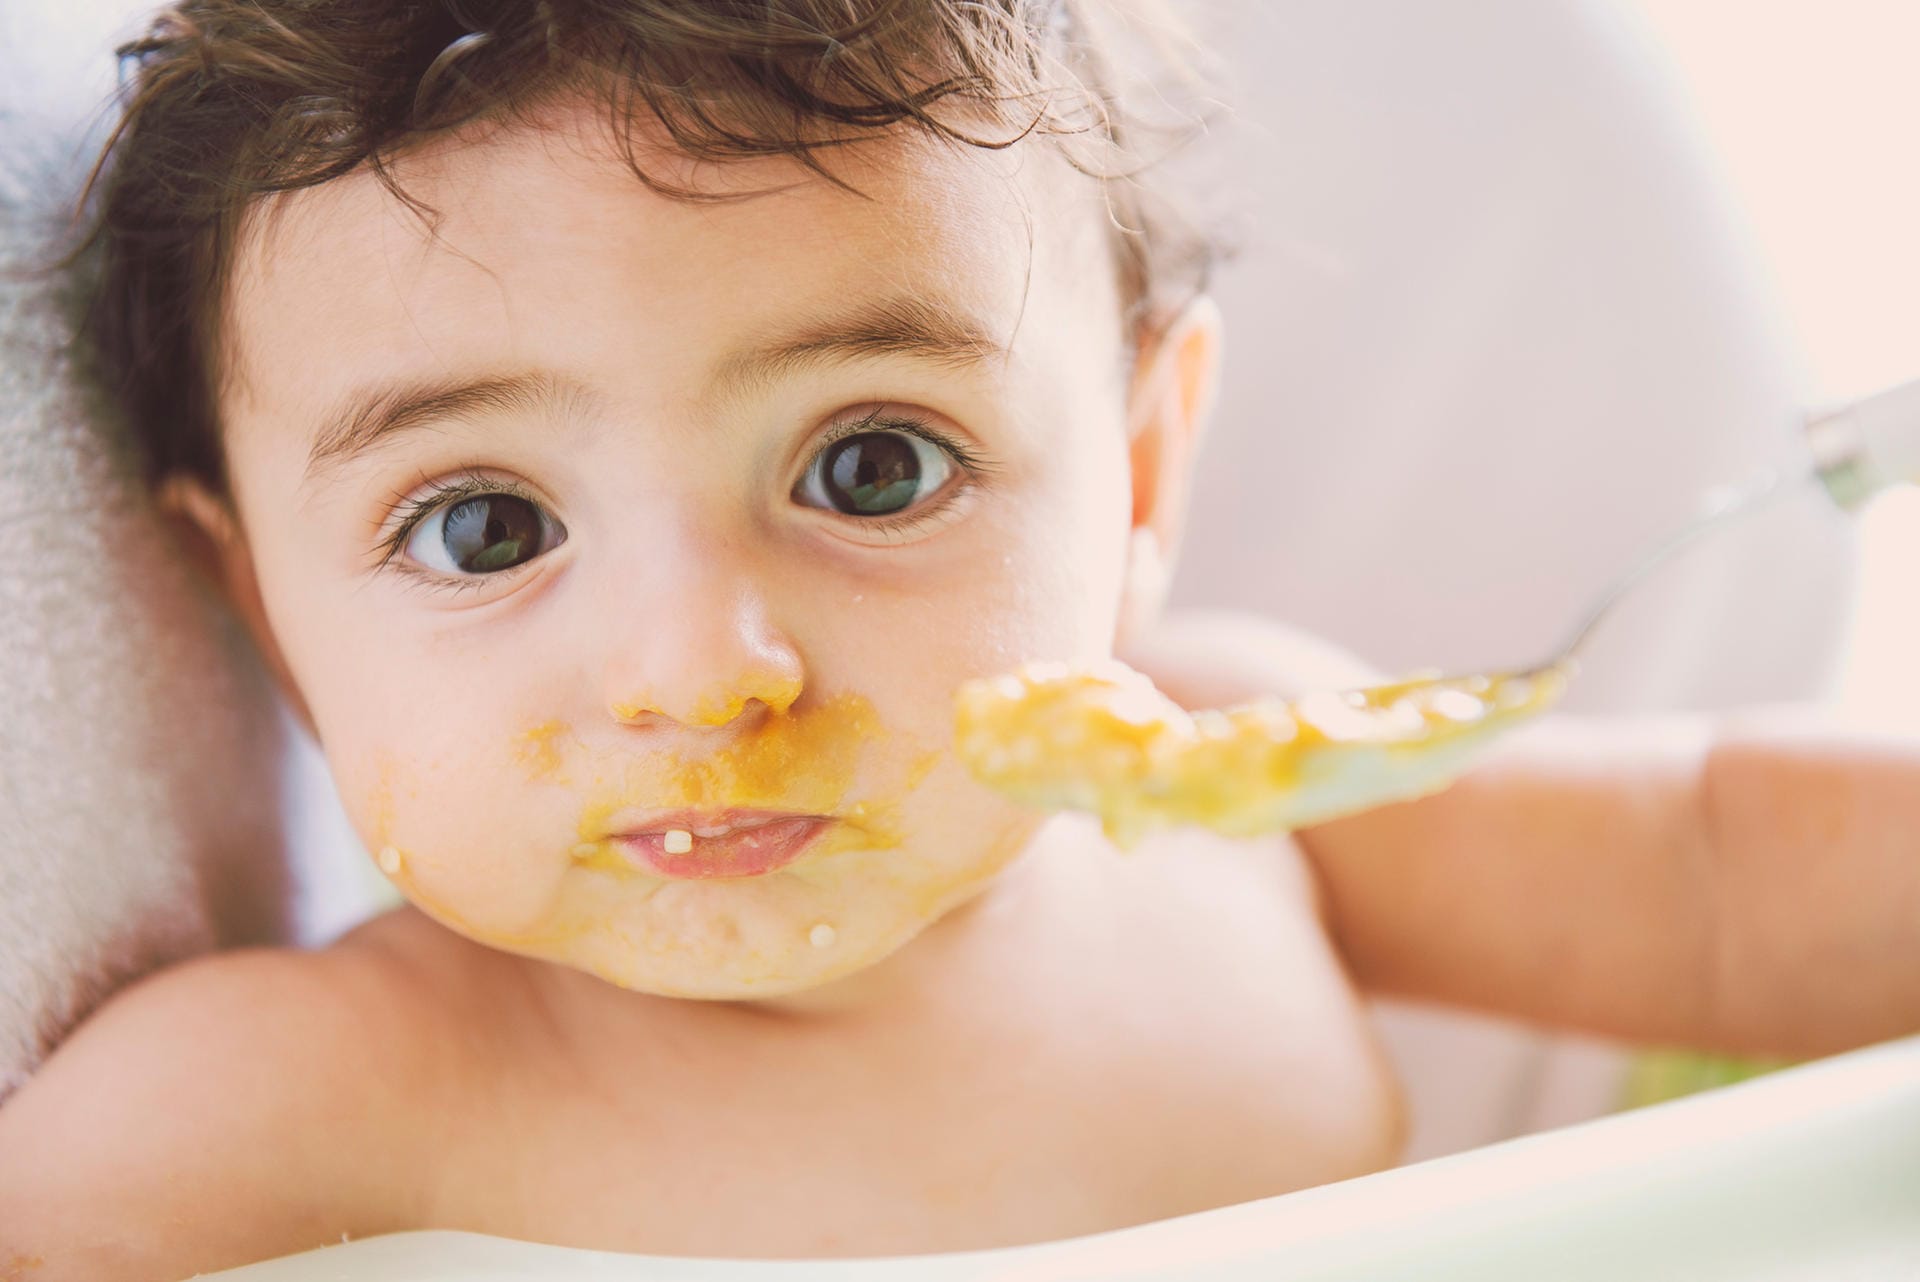 Babybrei: Ab dem fünften Lebensmonat können Sie anfangen, die Mahlzeiten Ihres Babys mit verschiedenen Sorten von pürierter Nahrung zu ersetzen.